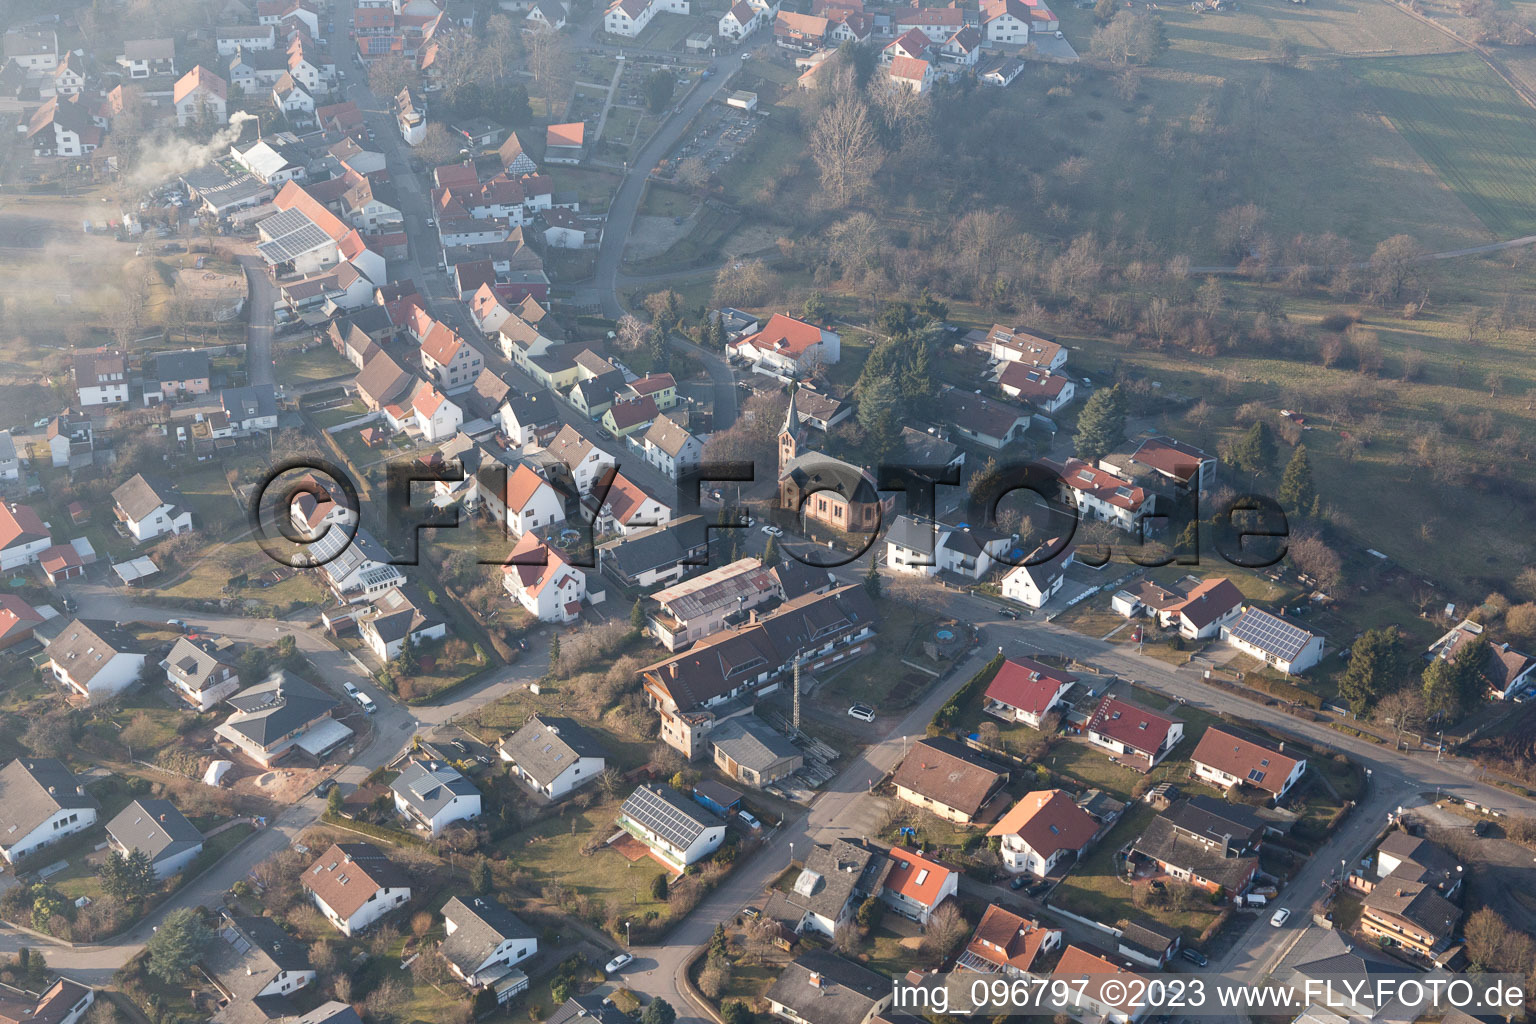 Hering im Bundesland Hessen, Deutschland aus der Luft betrachtet